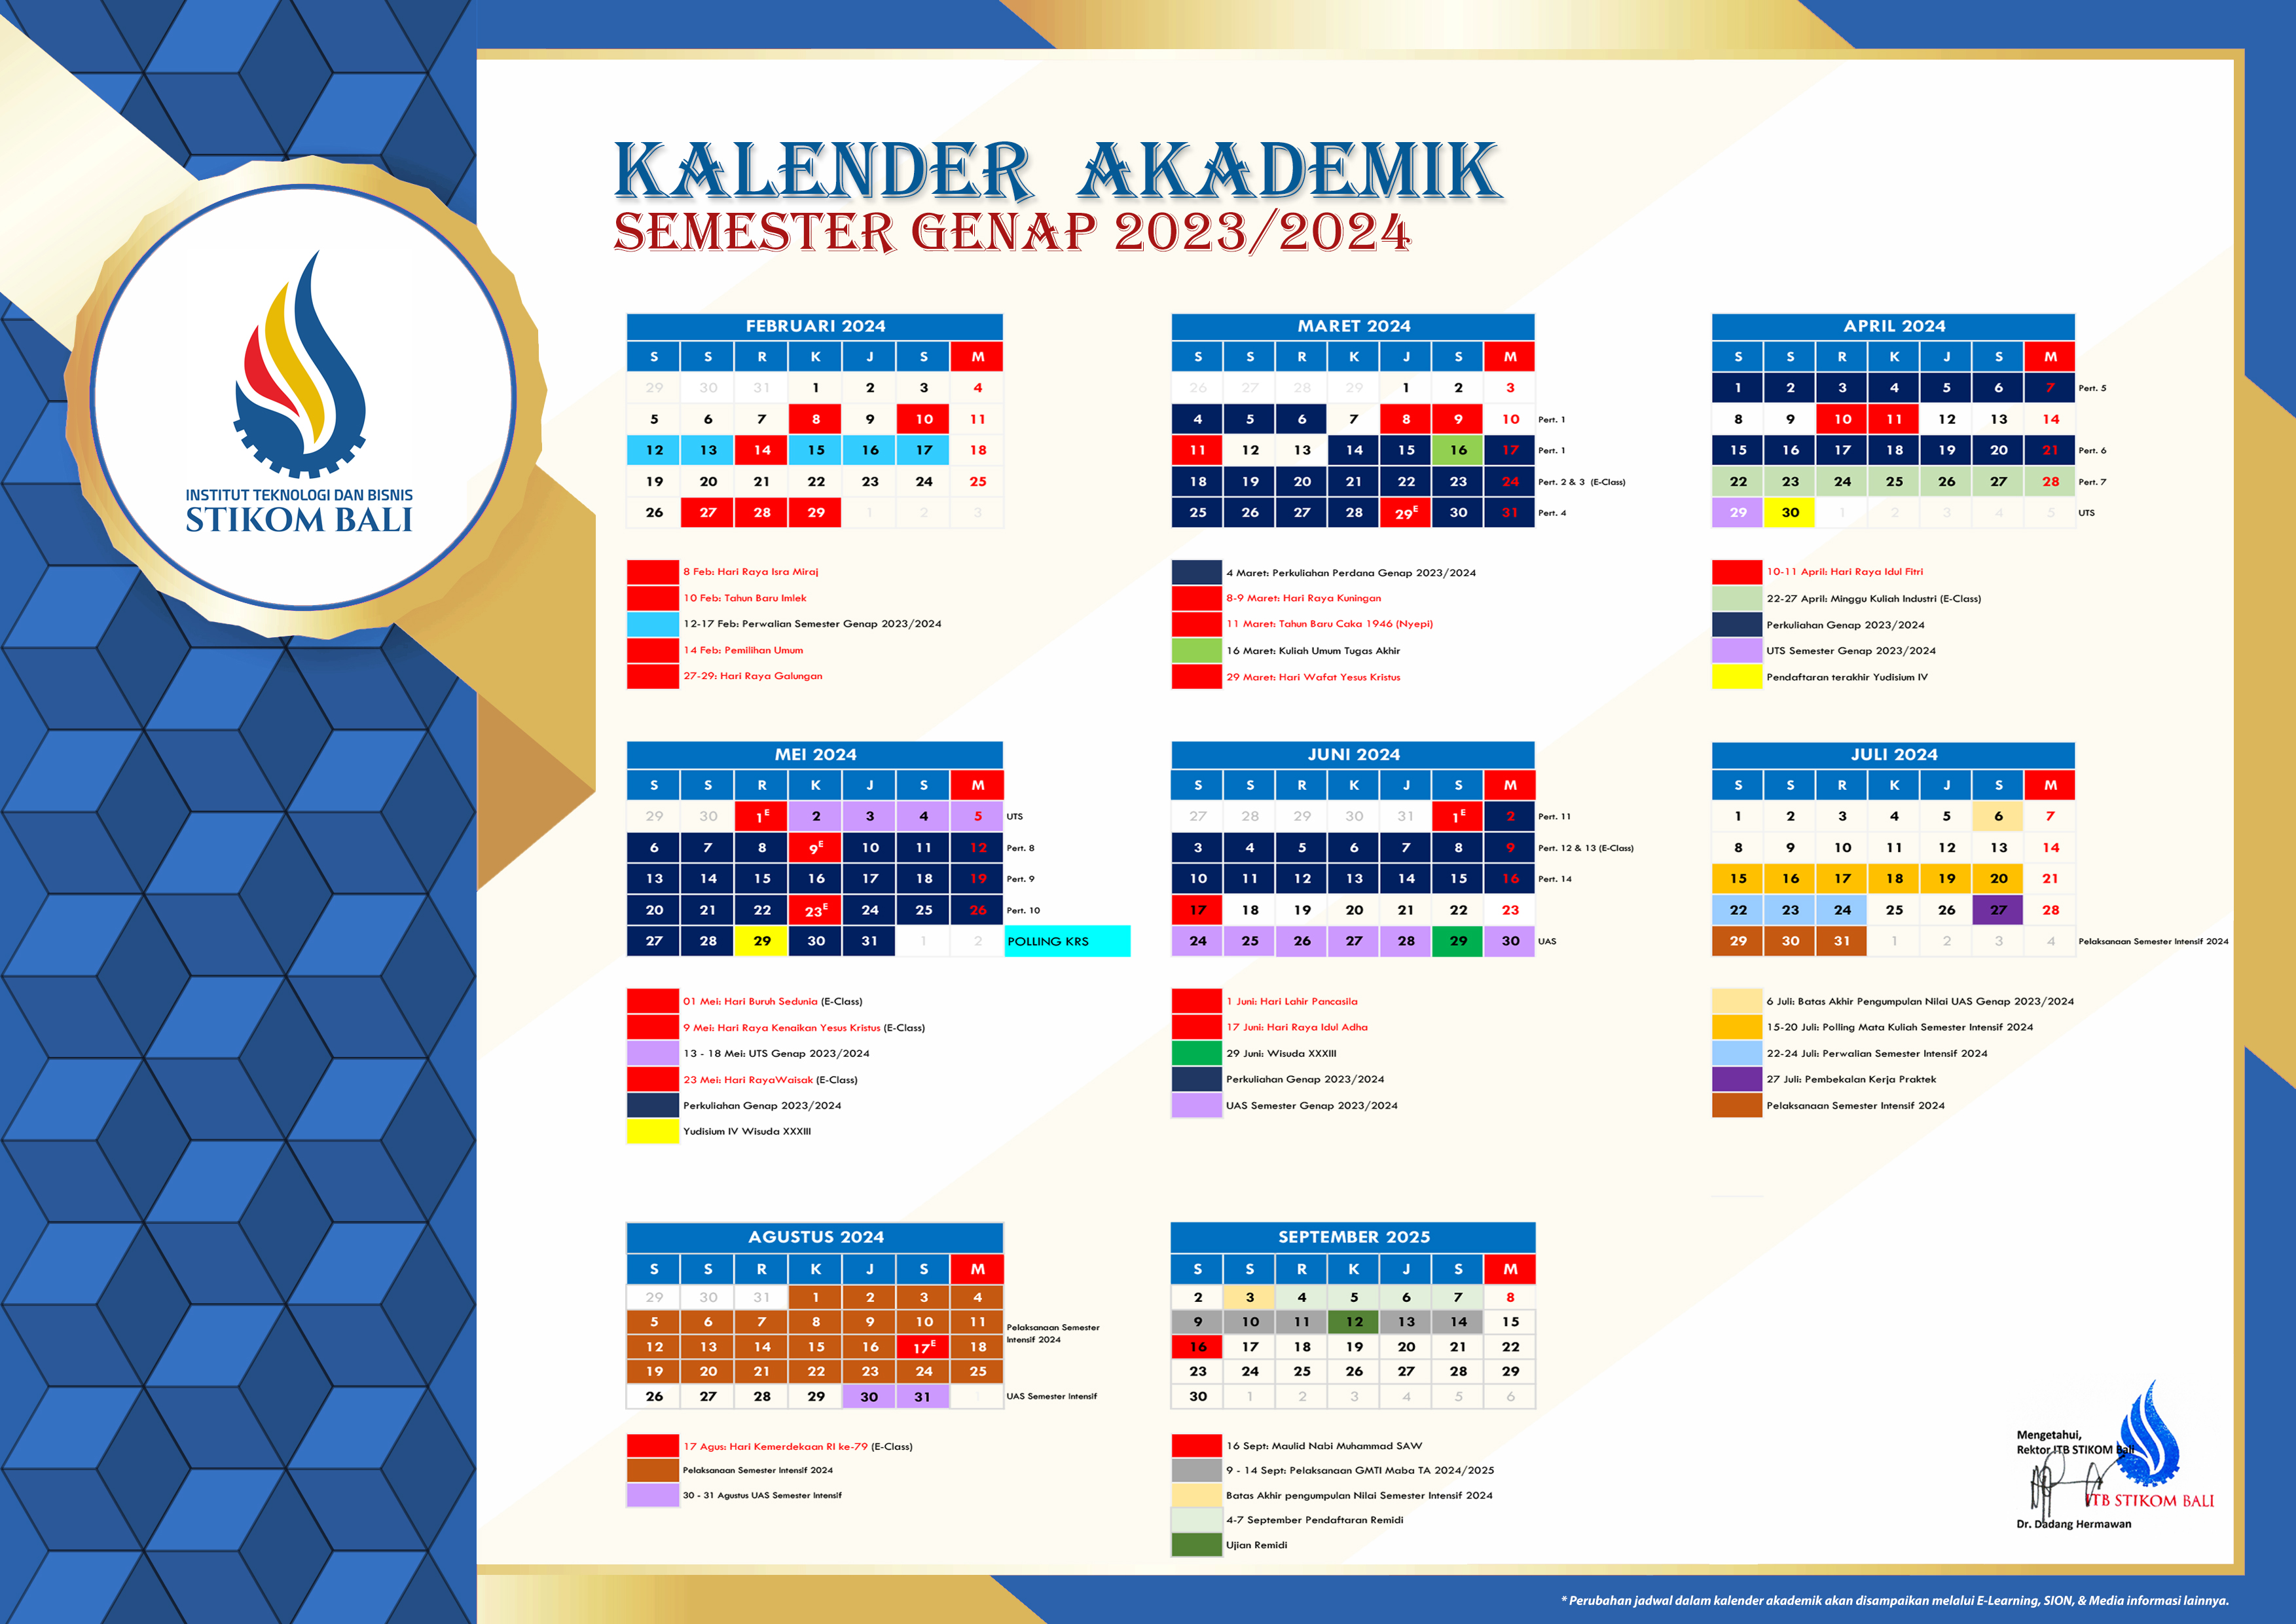 Attachment Kalender Akademik Semester Genap 2023-2024.jpg